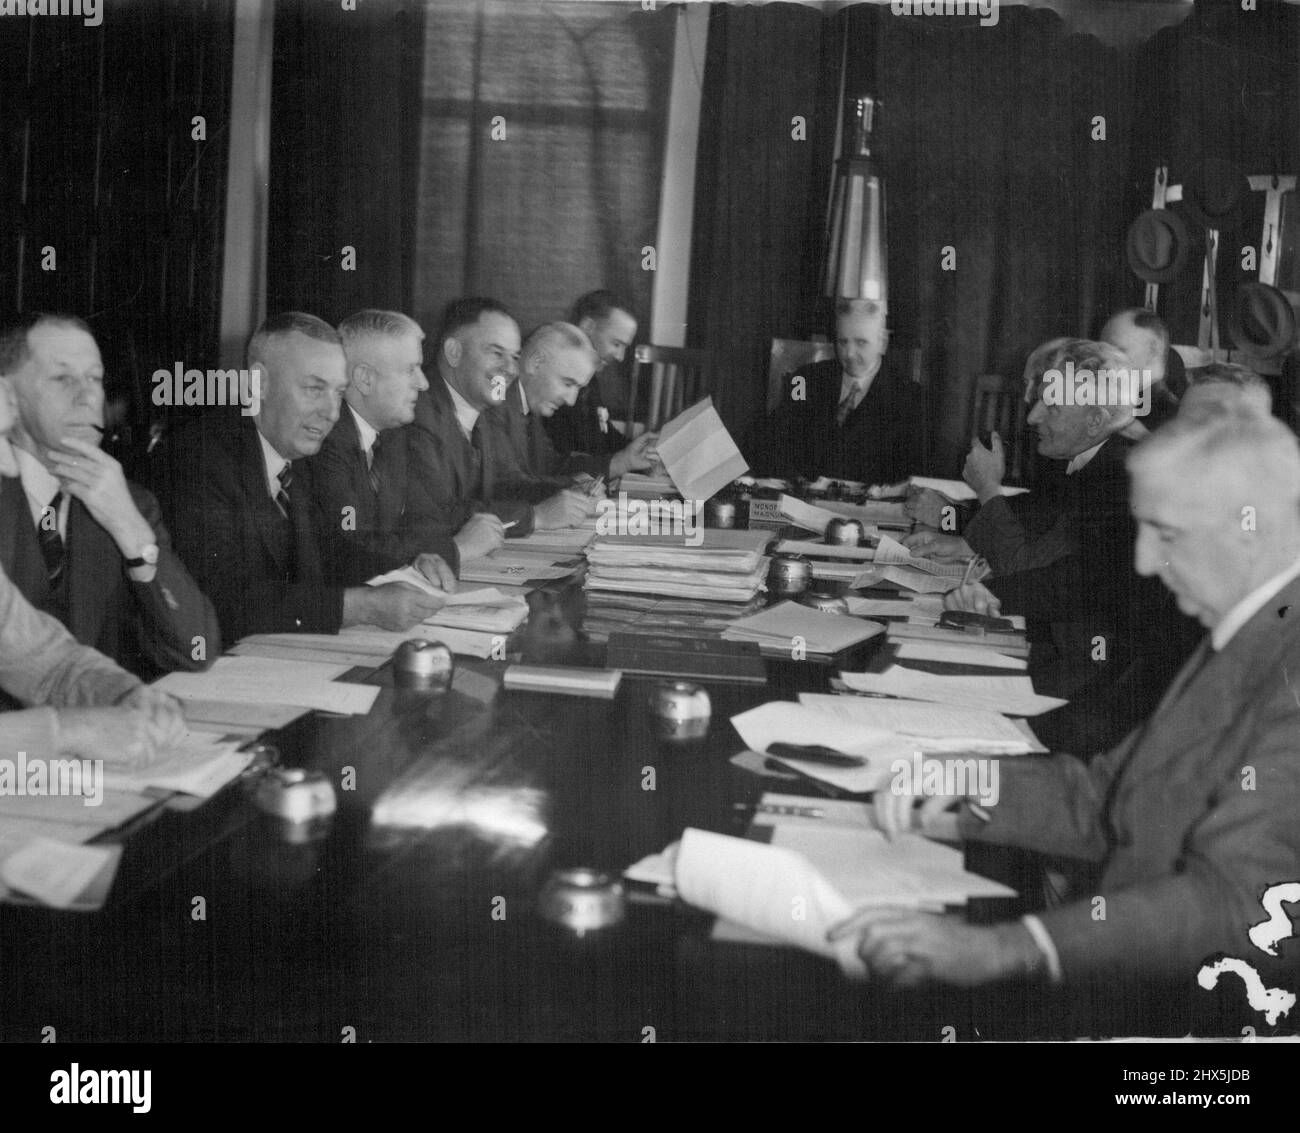 Australian Cricket 'Parliament', das Board of Control, in der Sitzung in der V.C.A. Heute wird gebaut. Es gab ausführliche Vorbereitungen für dieses wichtige Treffen, das mit mehr als 70 Punkten auf einer Tagesordnung stand. Von links (rund um den Tisch): Die Herren Clem Hill (S.A.), R. F. Middleton (S.A.), H. W. Hodgetts (S.A.), K. O. Johnstone (N.s.W.), R. A. Oxlade (N.S.W.), F. M. Cush (N.S.W.), der Vorsitzende (Dr. Allen Robertson), dem Sekretär des Vorstands und Manager des Teams (Herr W. H. Jeanes (S.A..), amtierender Sekretär, ( H. Heydon, N.S.W.), Dr. R. L. Morton (Vic.) und die Herren H. A. Bussell (Vic.) Stockfoto